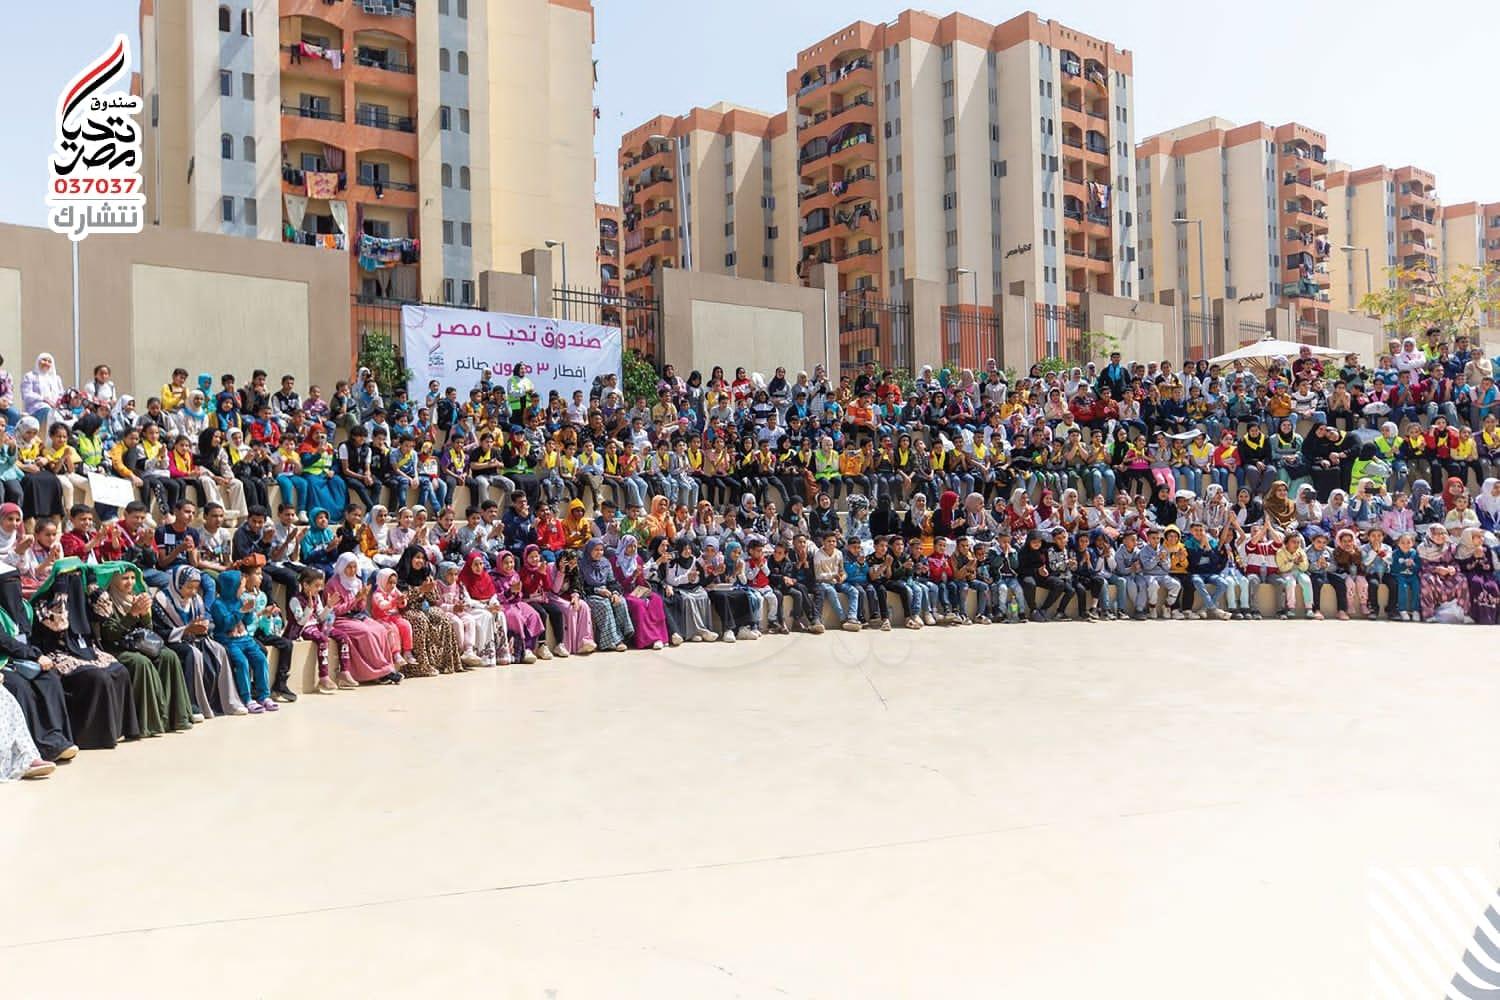 صندوق تحيا مصر يحتفل مع 2800 طفل في يوم اليتيم بالمدينة الشبابية في الأسمرات